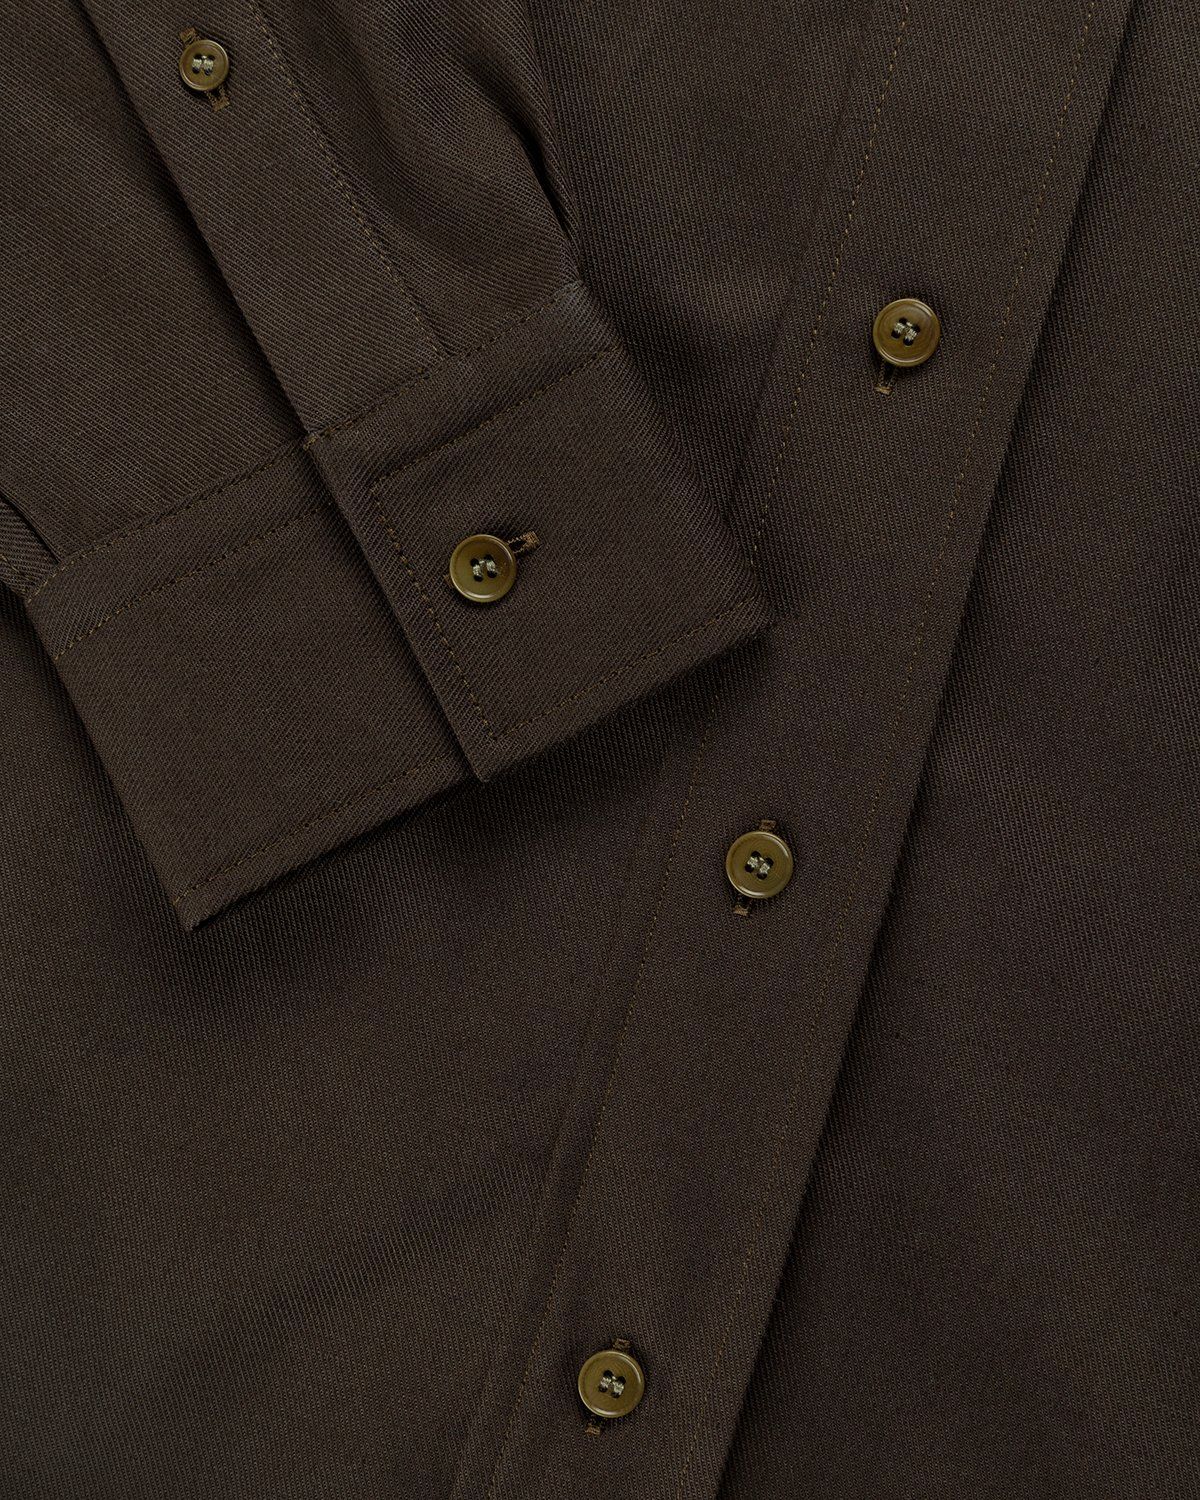 Acne Studios – Linen Blend Button-Up Shirt Dark Olive